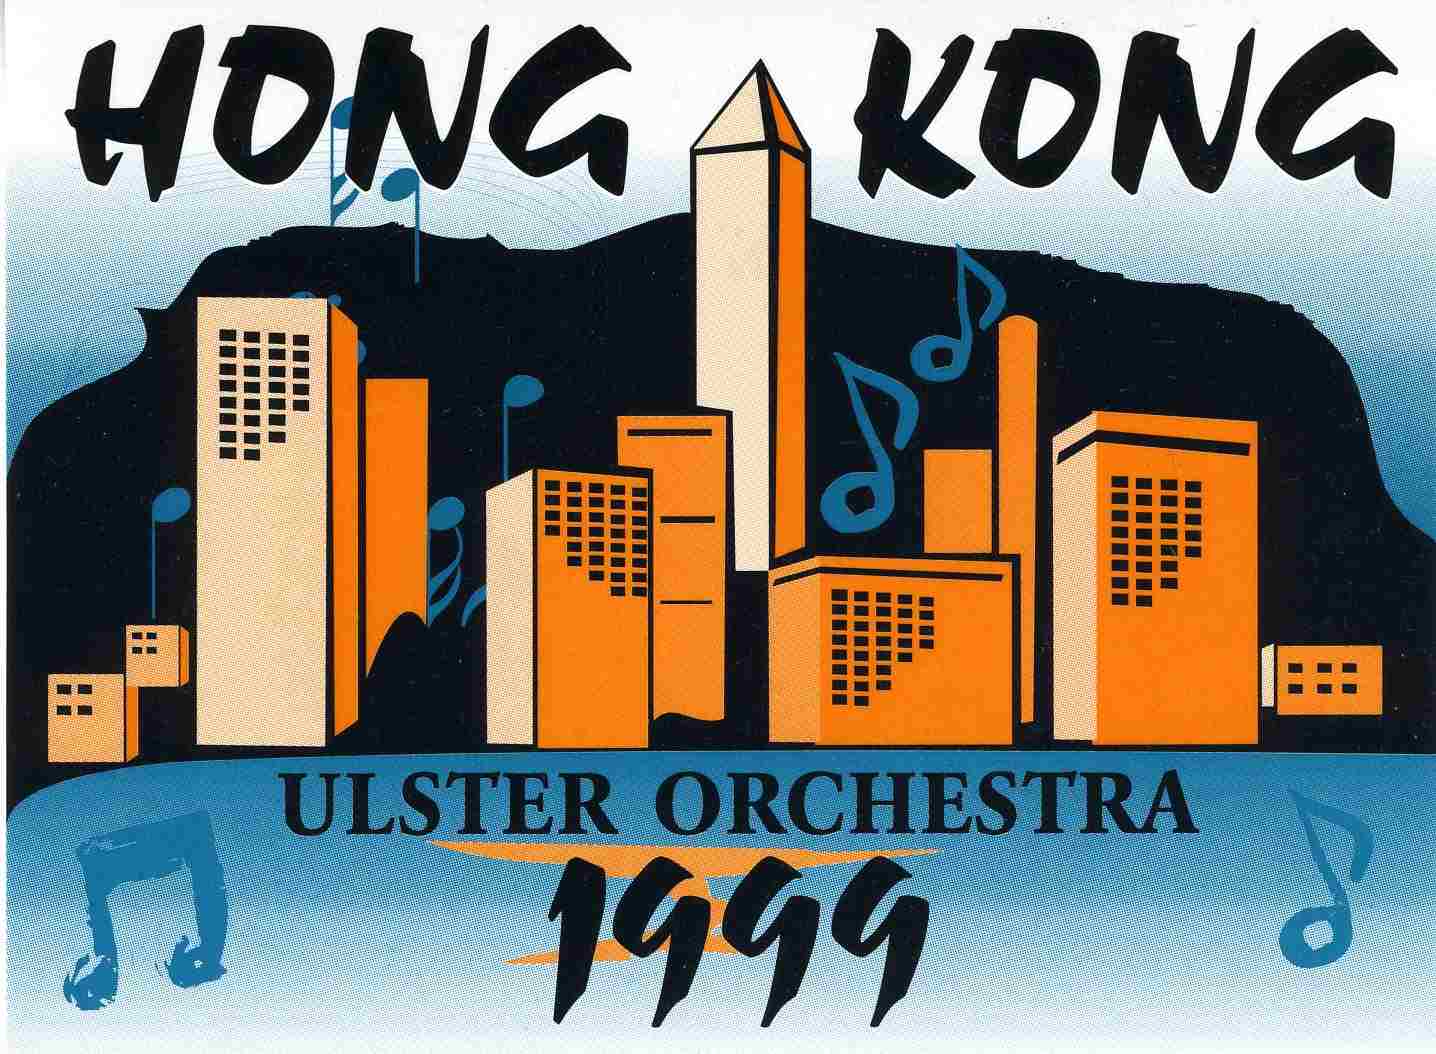 Ulster Orchestra's Hong Kong Tour, 1999